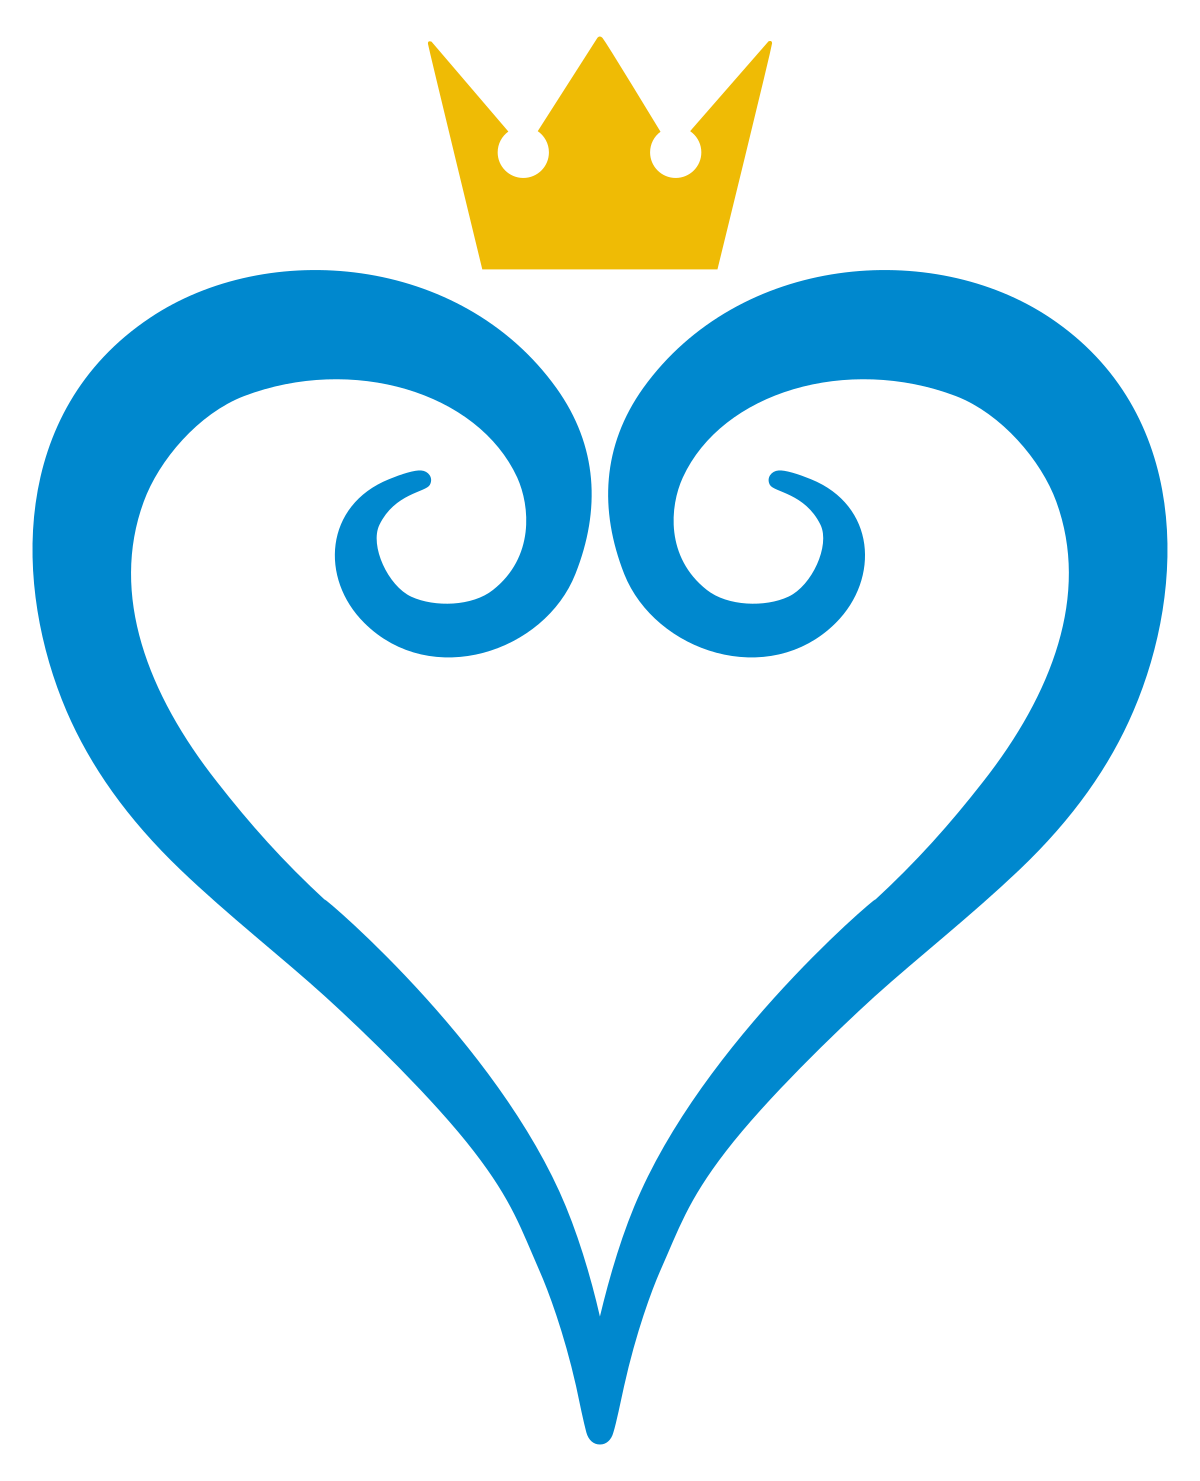 Download PNG image - Kingdom Hearts Logo Transparent PNG 